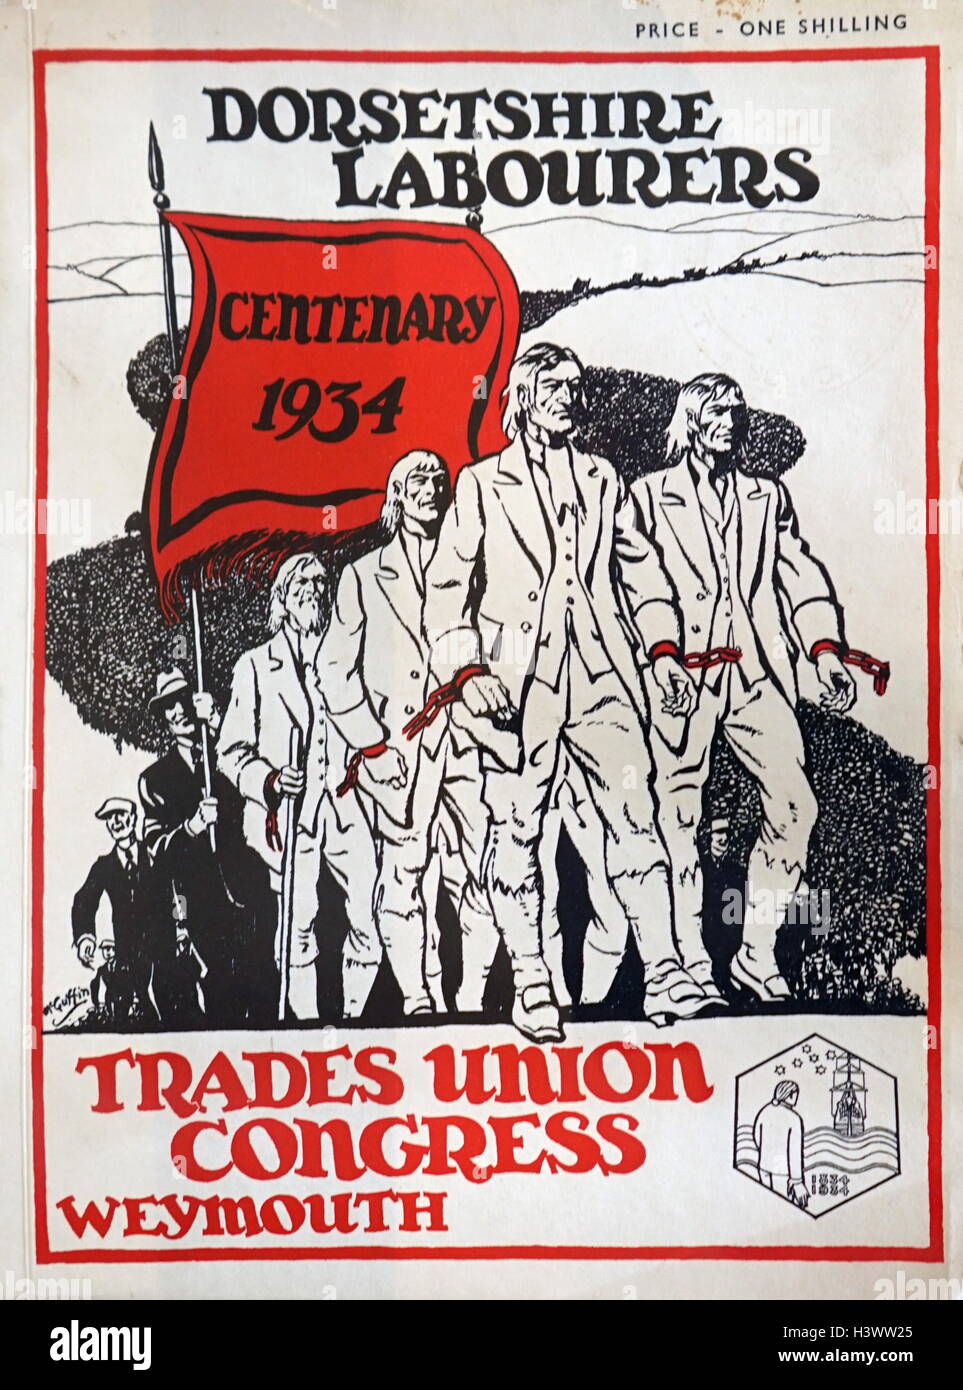 Ouvriers, centenaire 1934 Dorsetshire' publié par le Trades Union Congress. En date du 20e siècle Banque D'Images